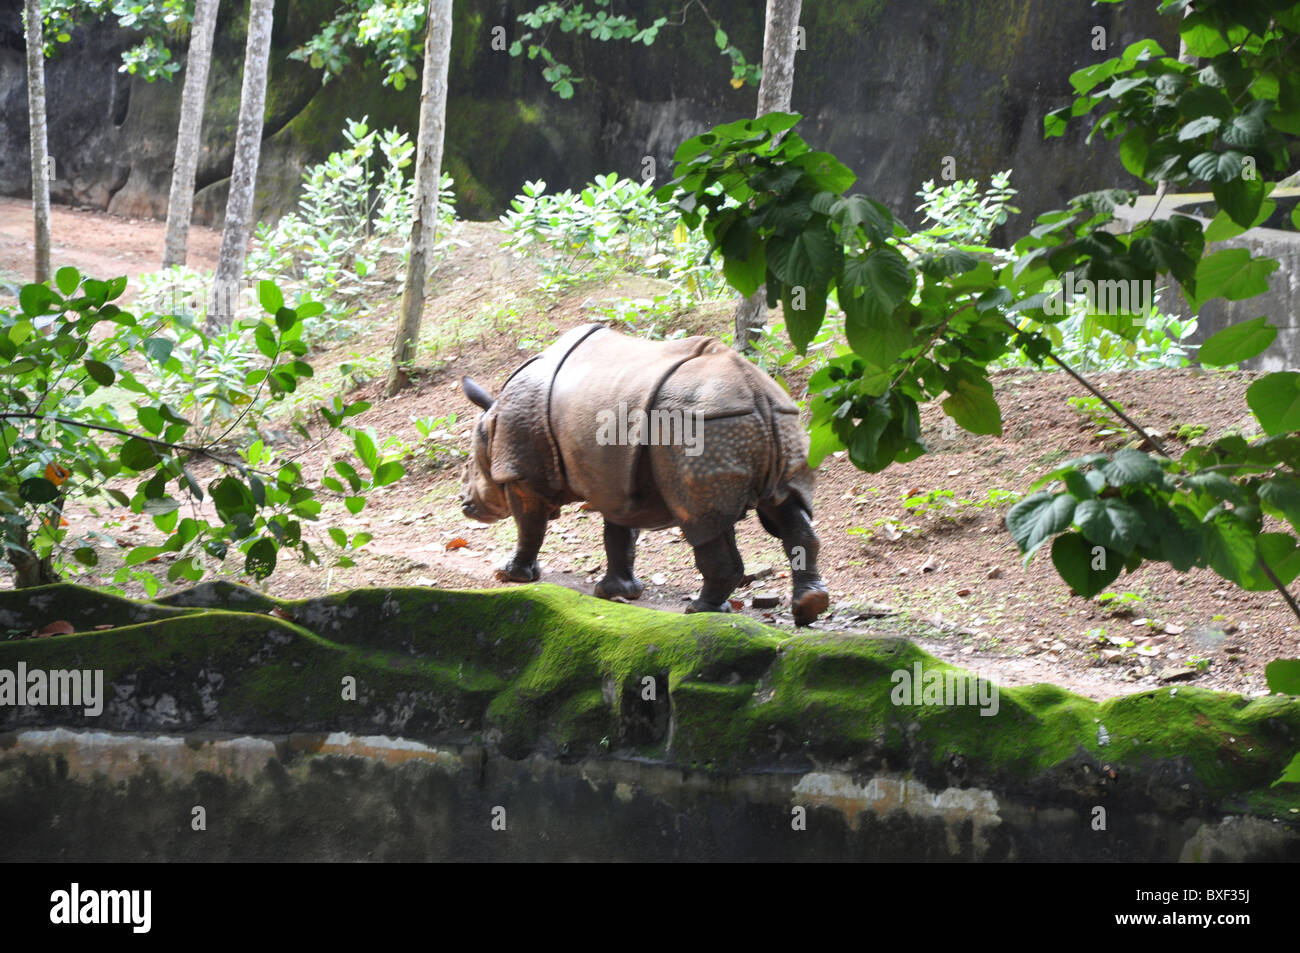 Le Rhinocéros indien ou le Grand-duc d'un Rhino à Trivandrum Thiruvananthapuram Zoo au Kerala Inde Asie Banque D'Images